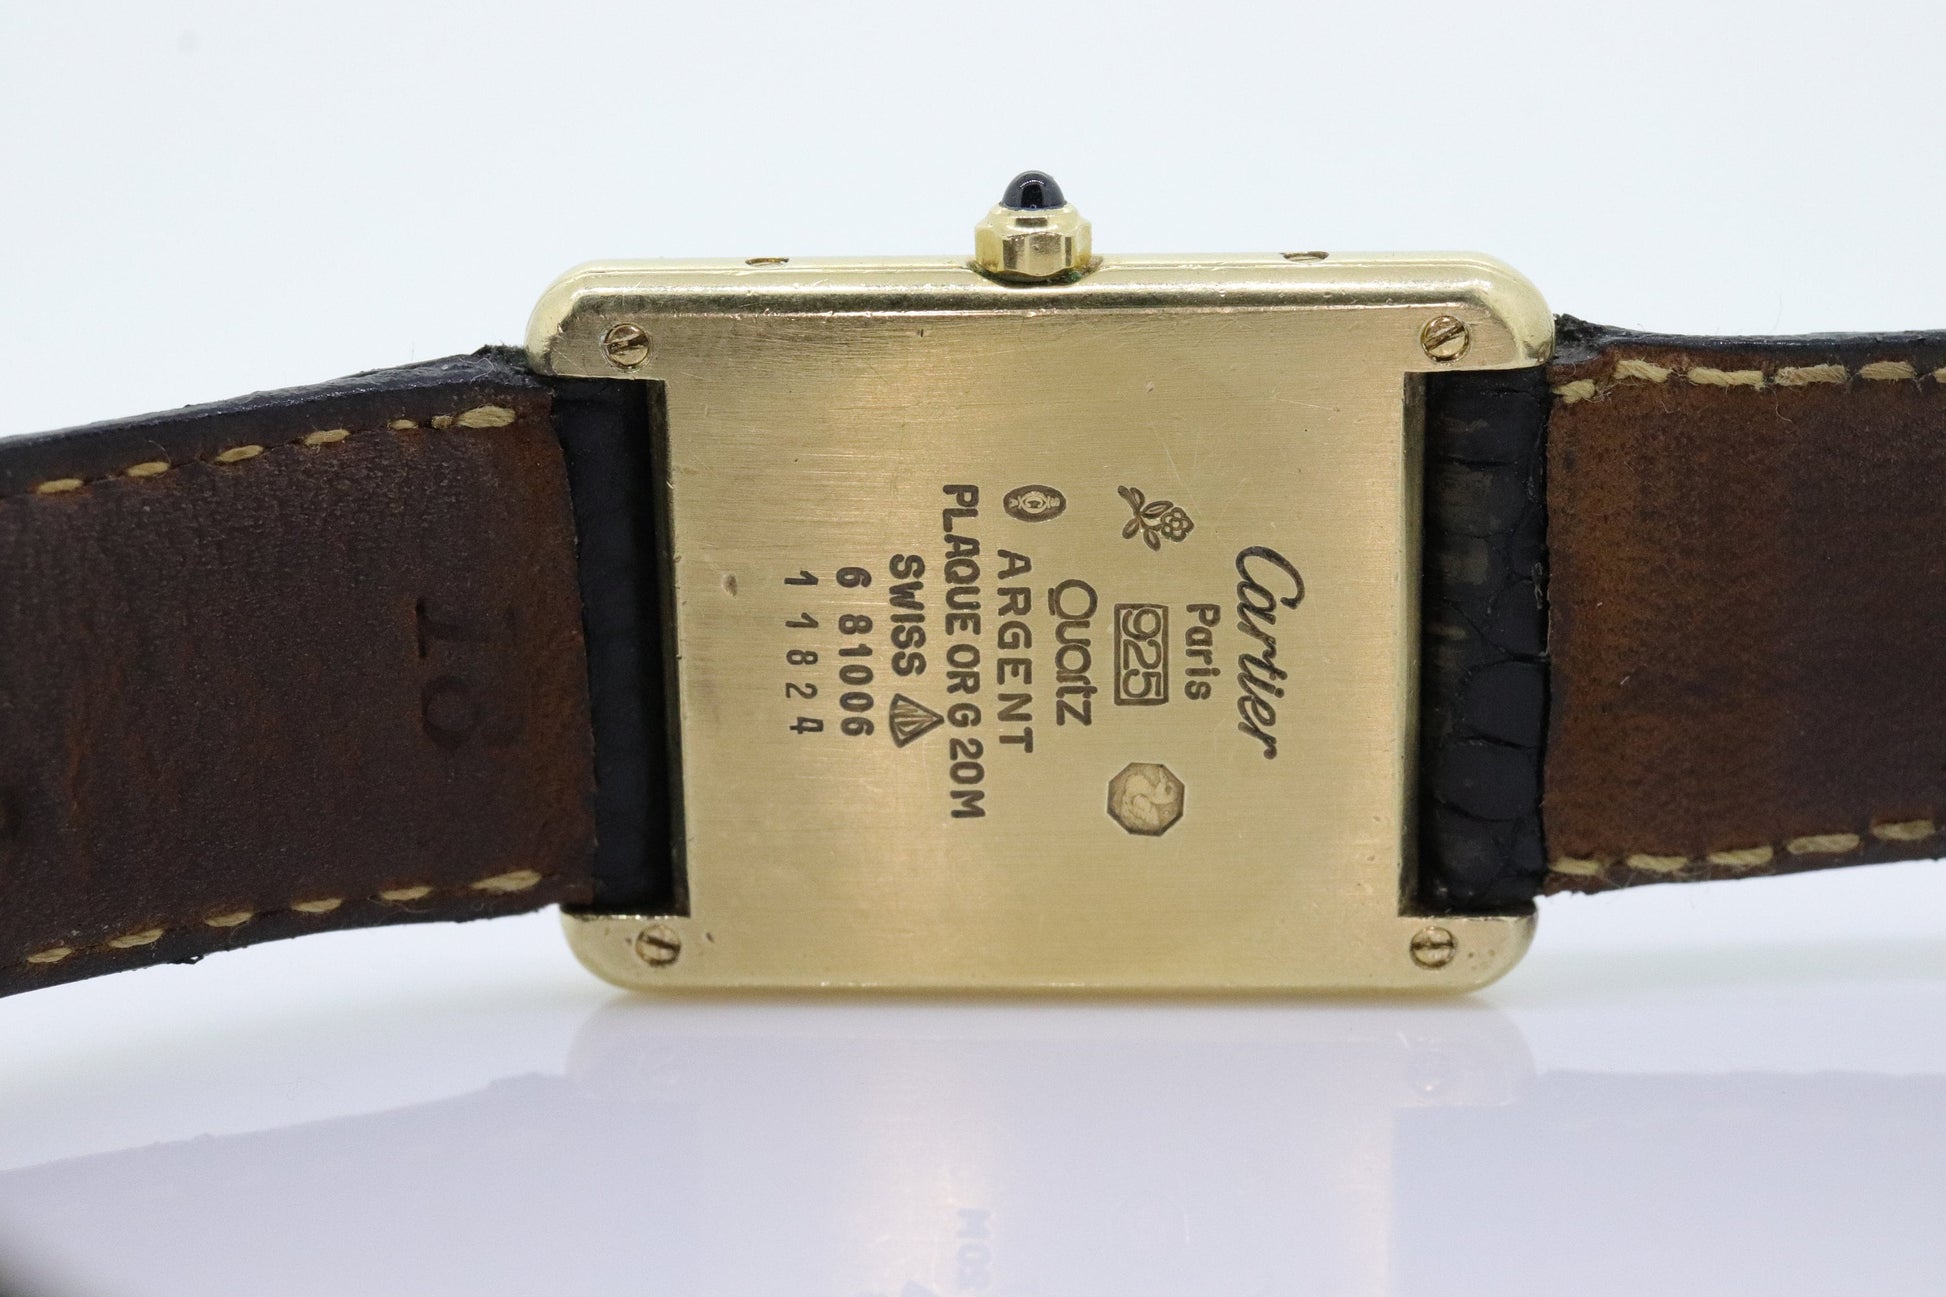 Vintage Must de Cartier Tank Watch. ARGENT Cartier 925 Vermeil Quartz Ardent Swiss Made. st(773)